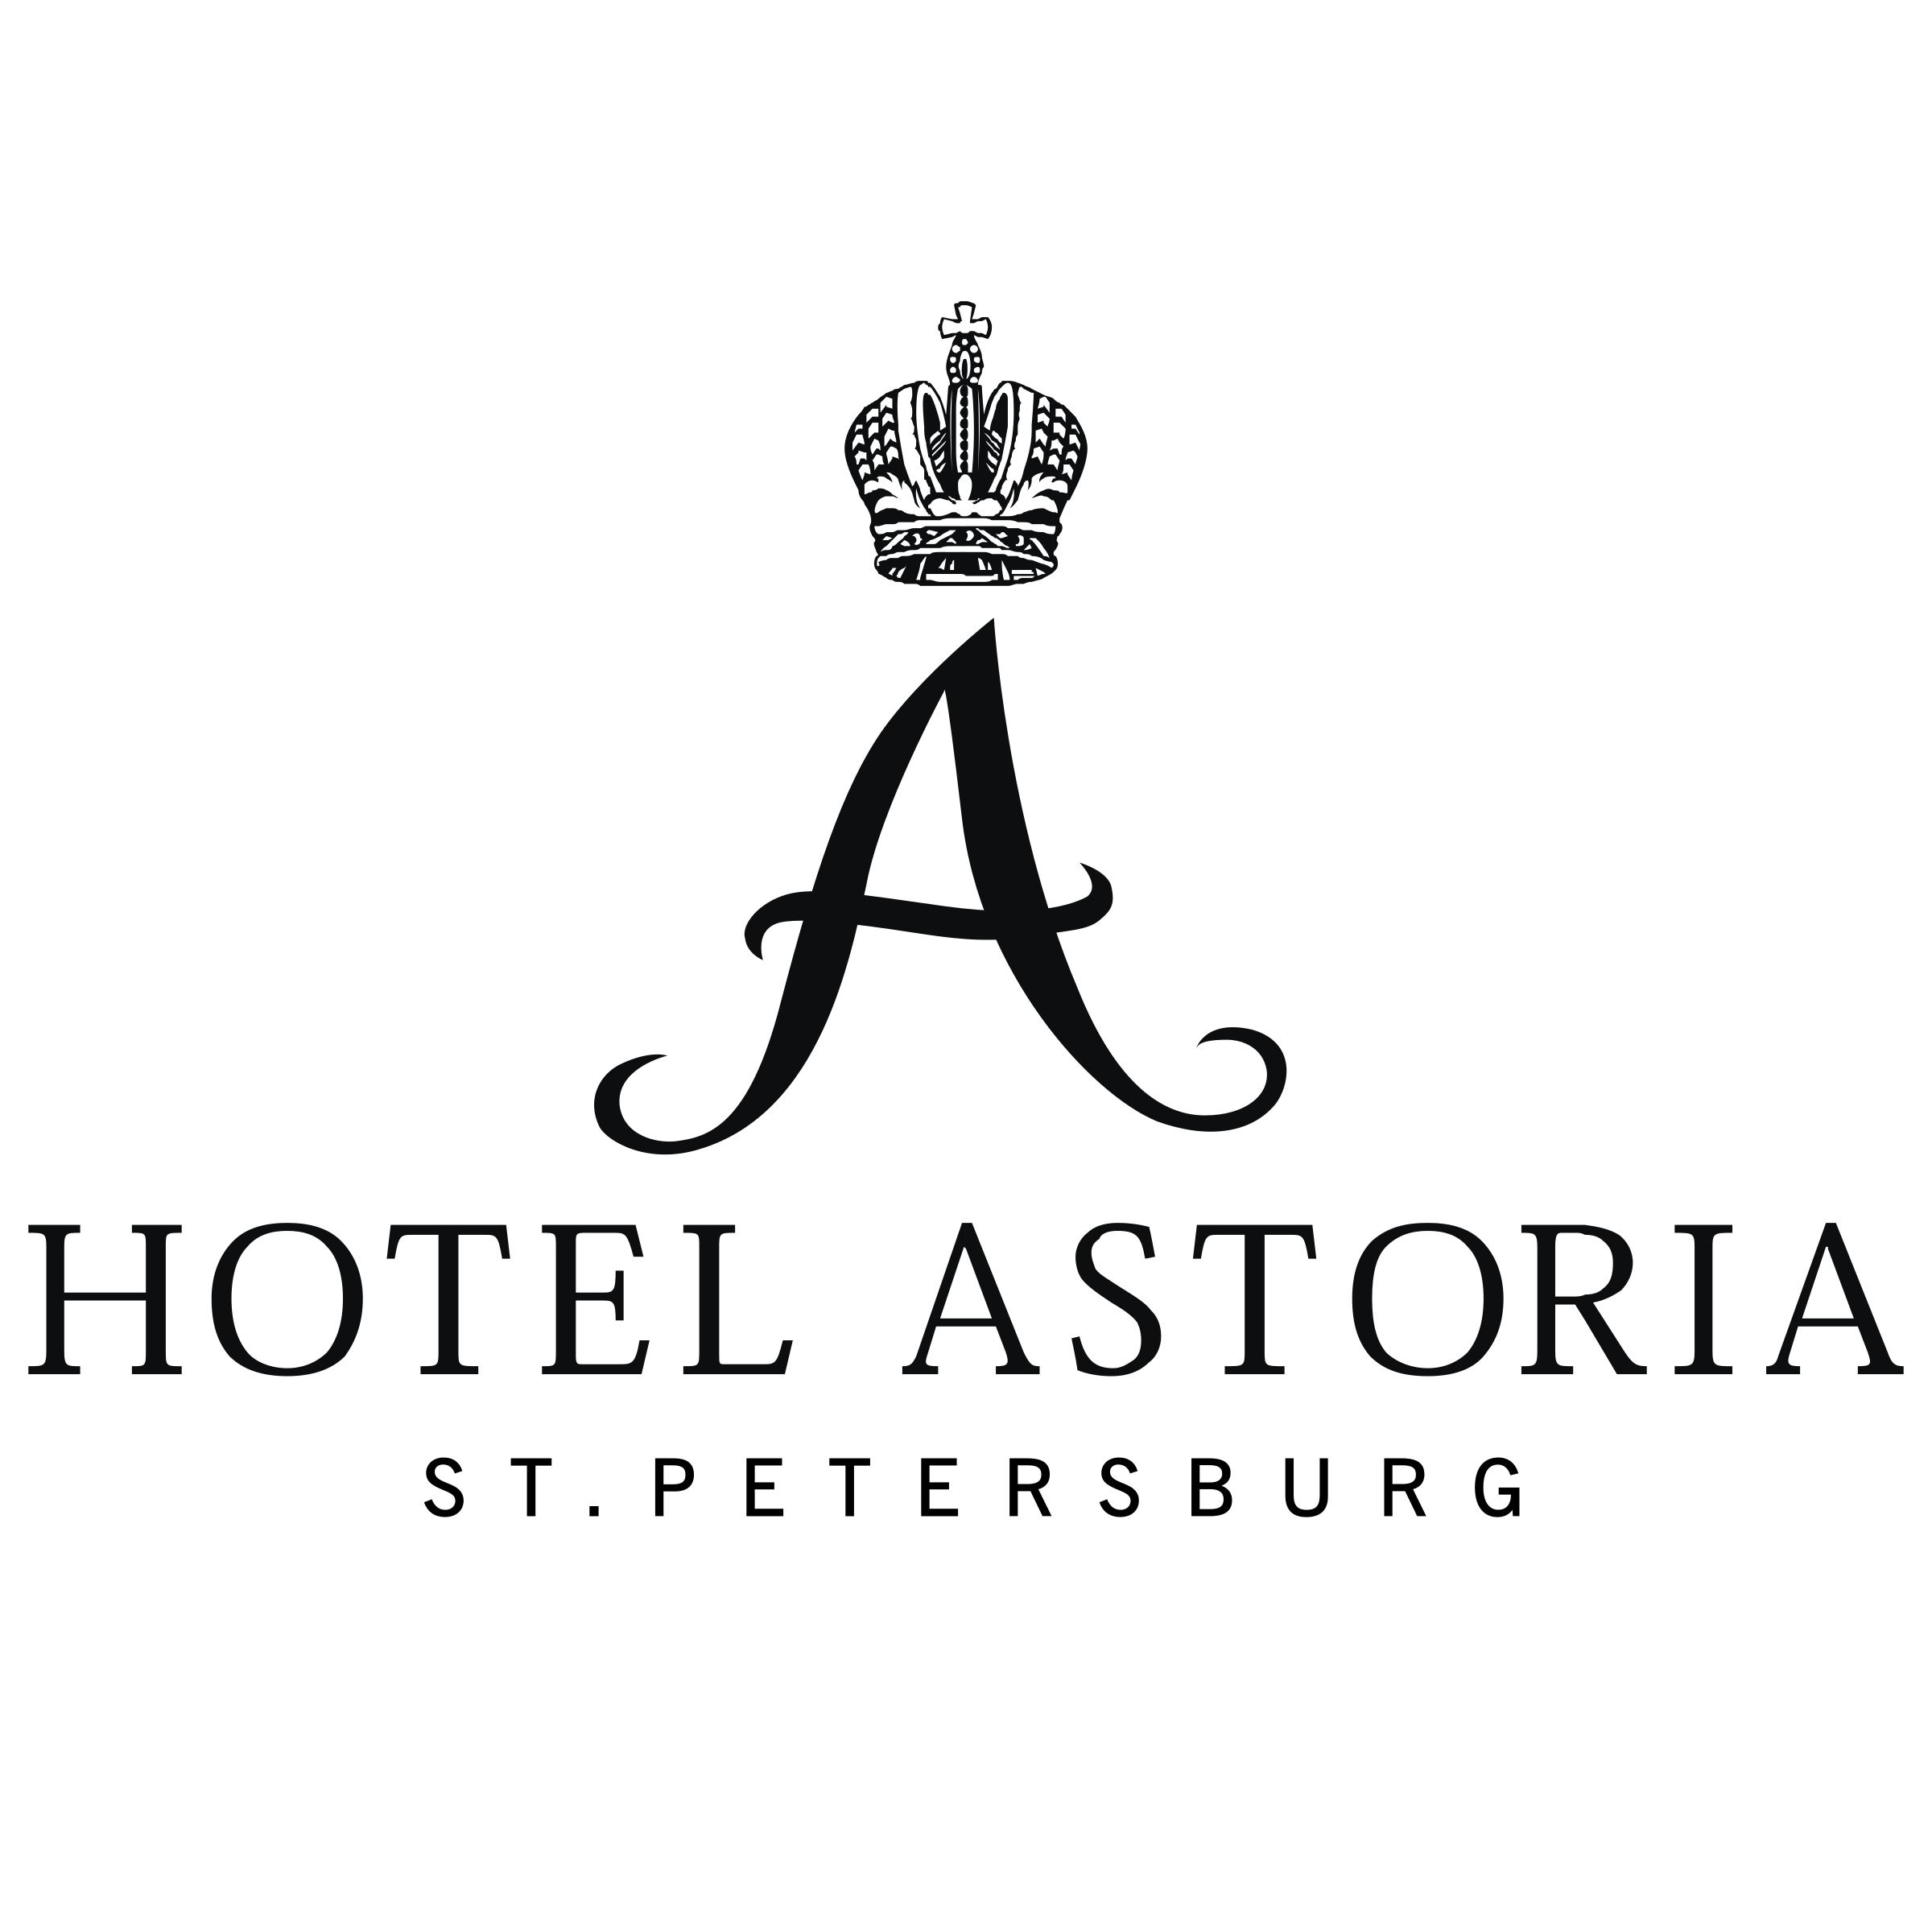 Hotel astoria logo png transparent #41804